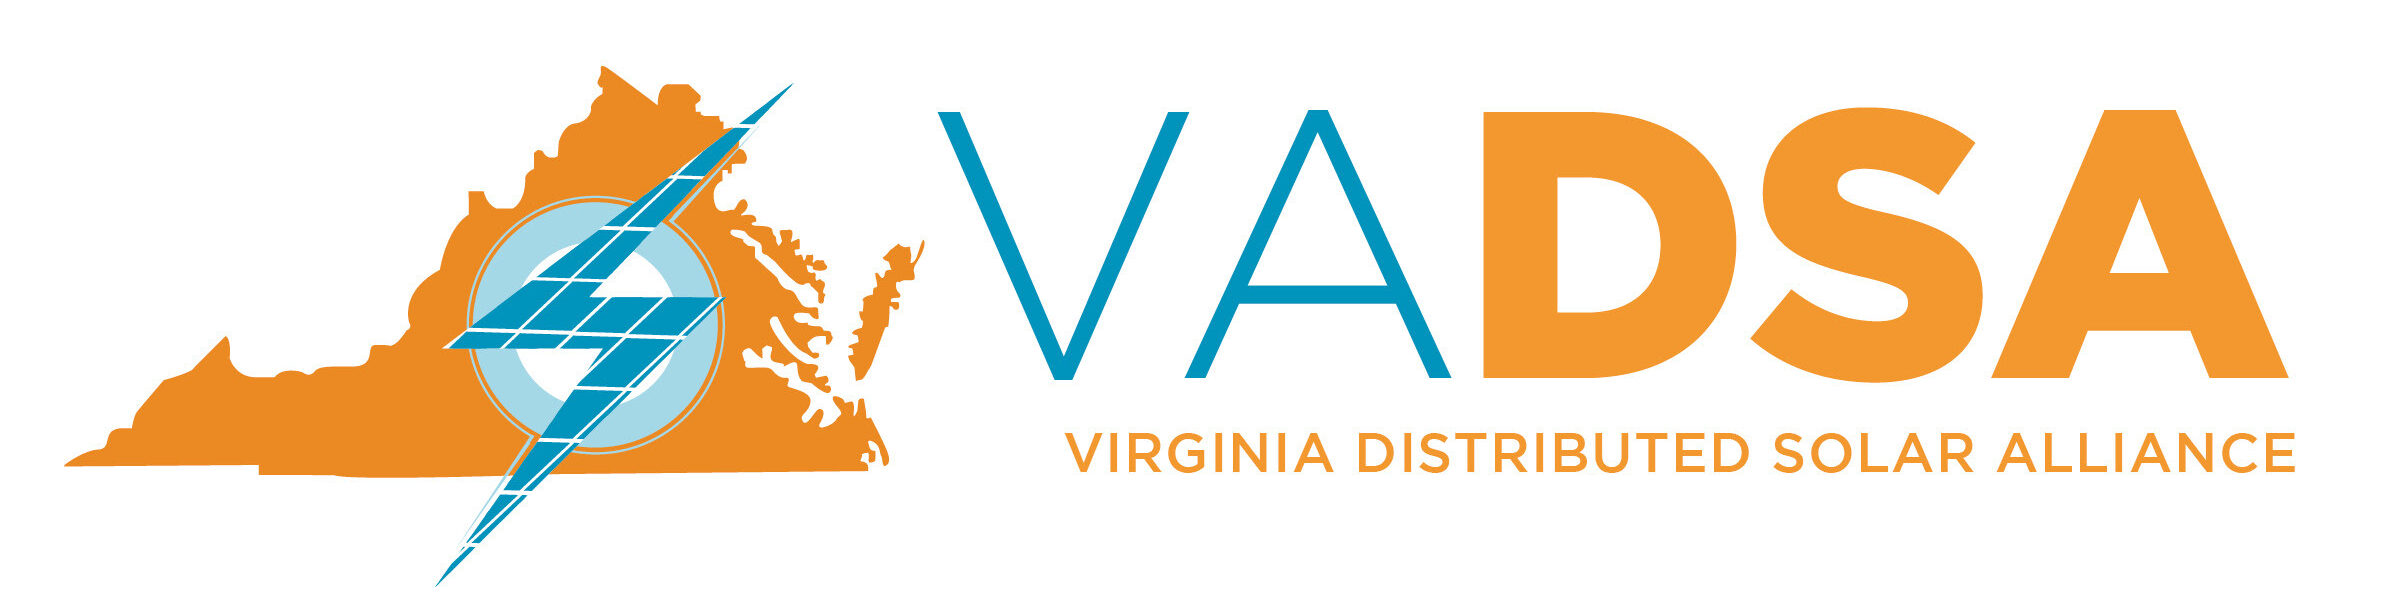 VA DSA logo